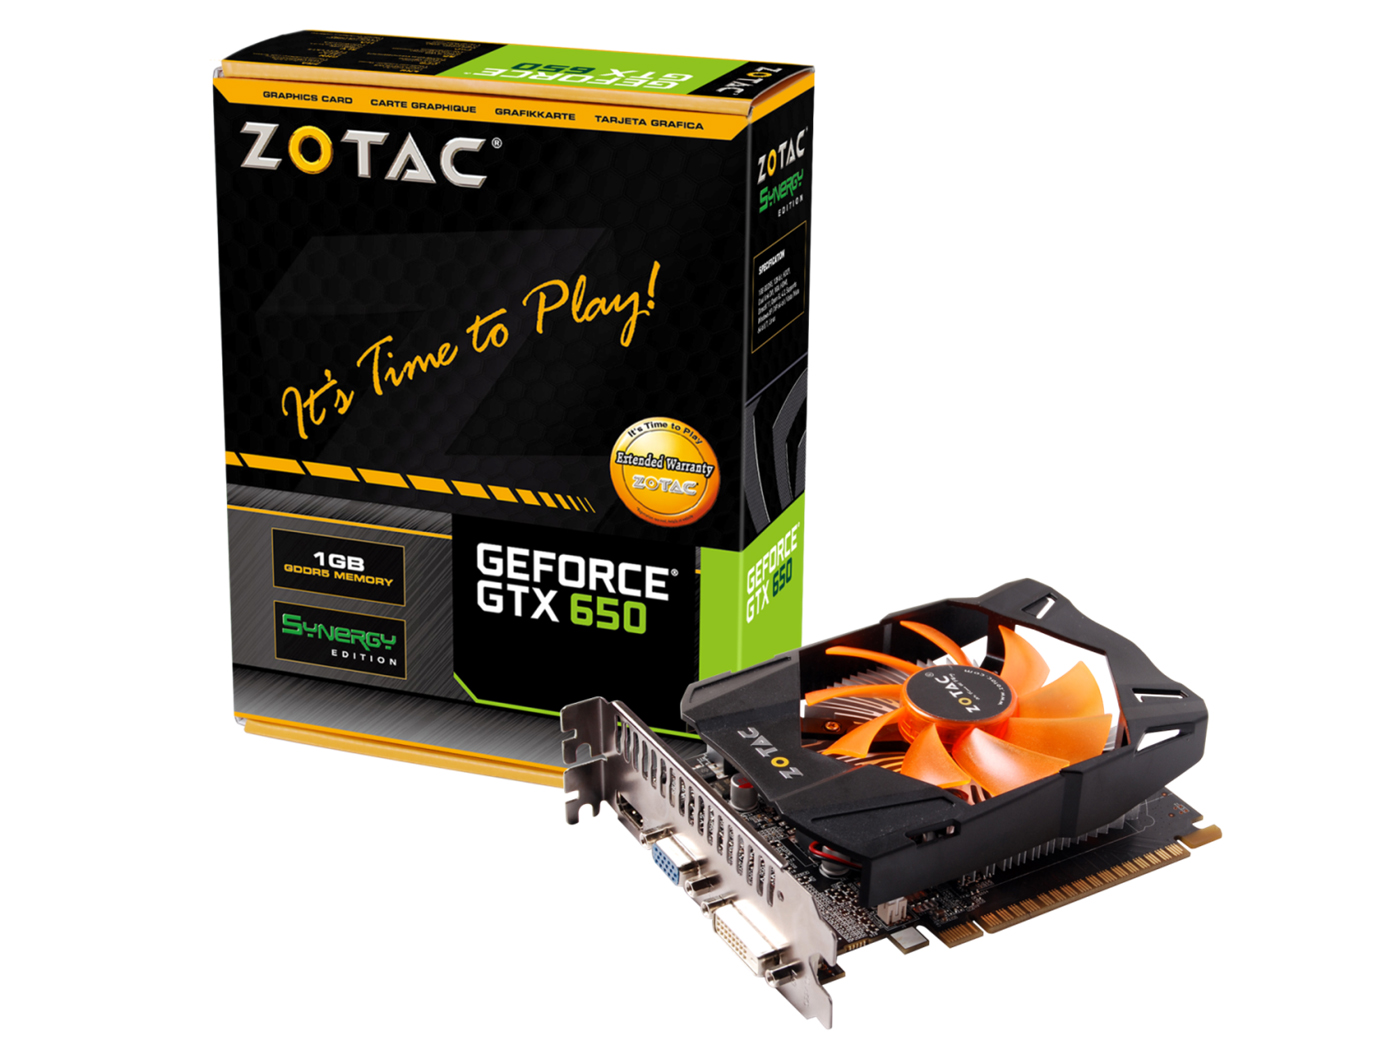 Immagine pubblicata in relazione al seguente contenuto: Zotac realizza la video card GeForce GTX 650 1GB REV2 | Nome immagine: news19225_ZOTAC_GeForce-GTX-650-1GB-REV2_3.jpg